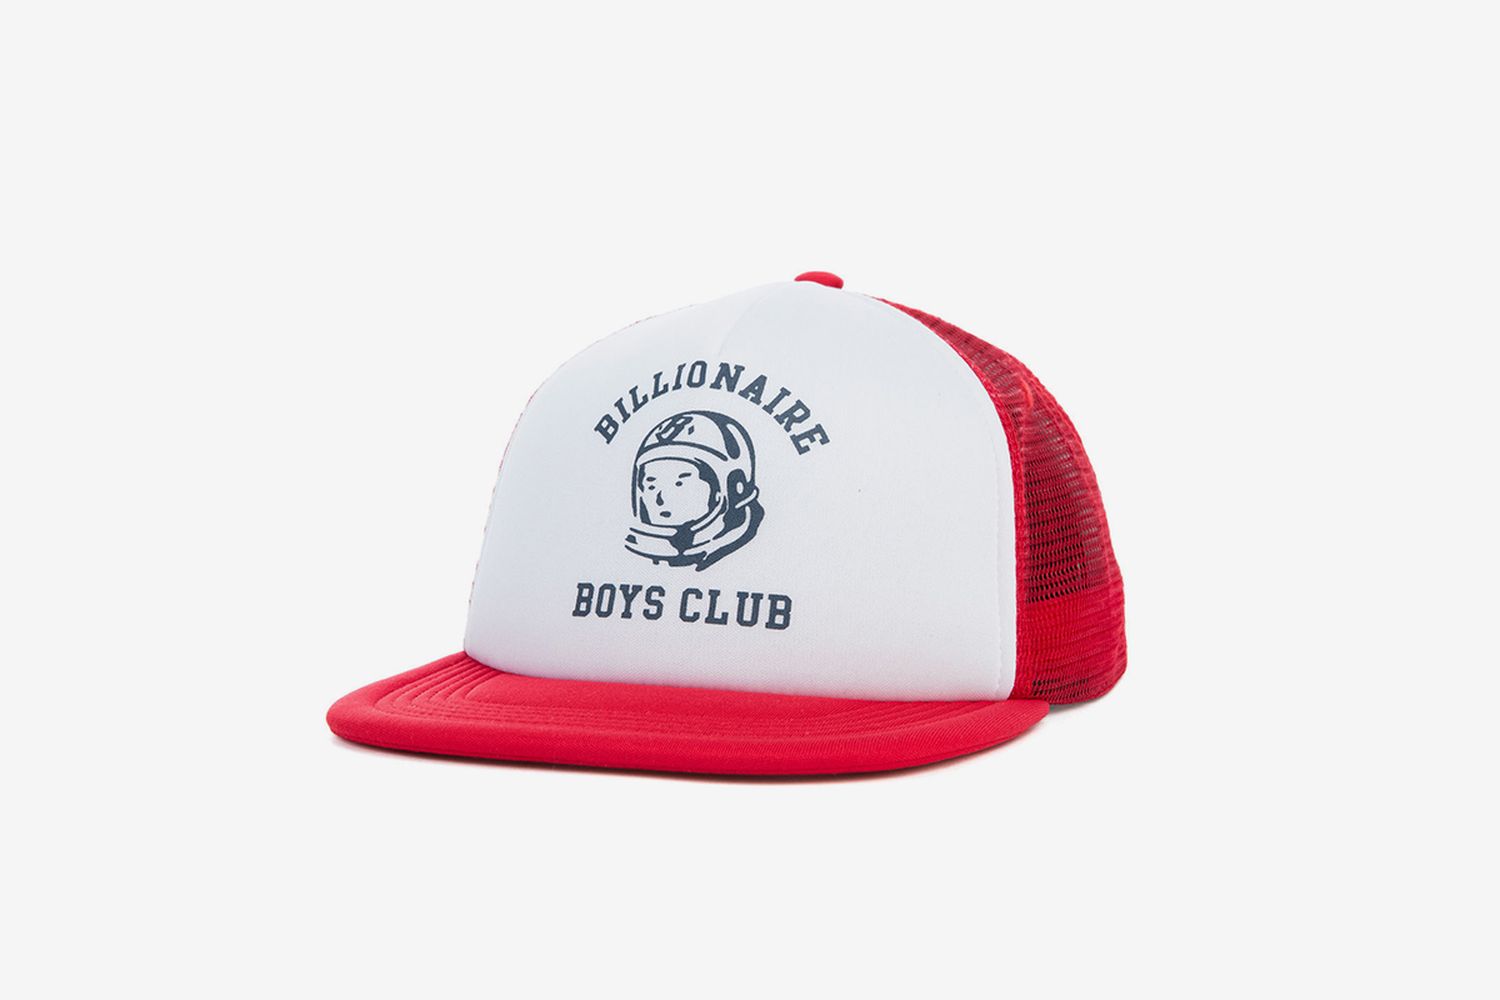 BB Bill Club Trucker Cap